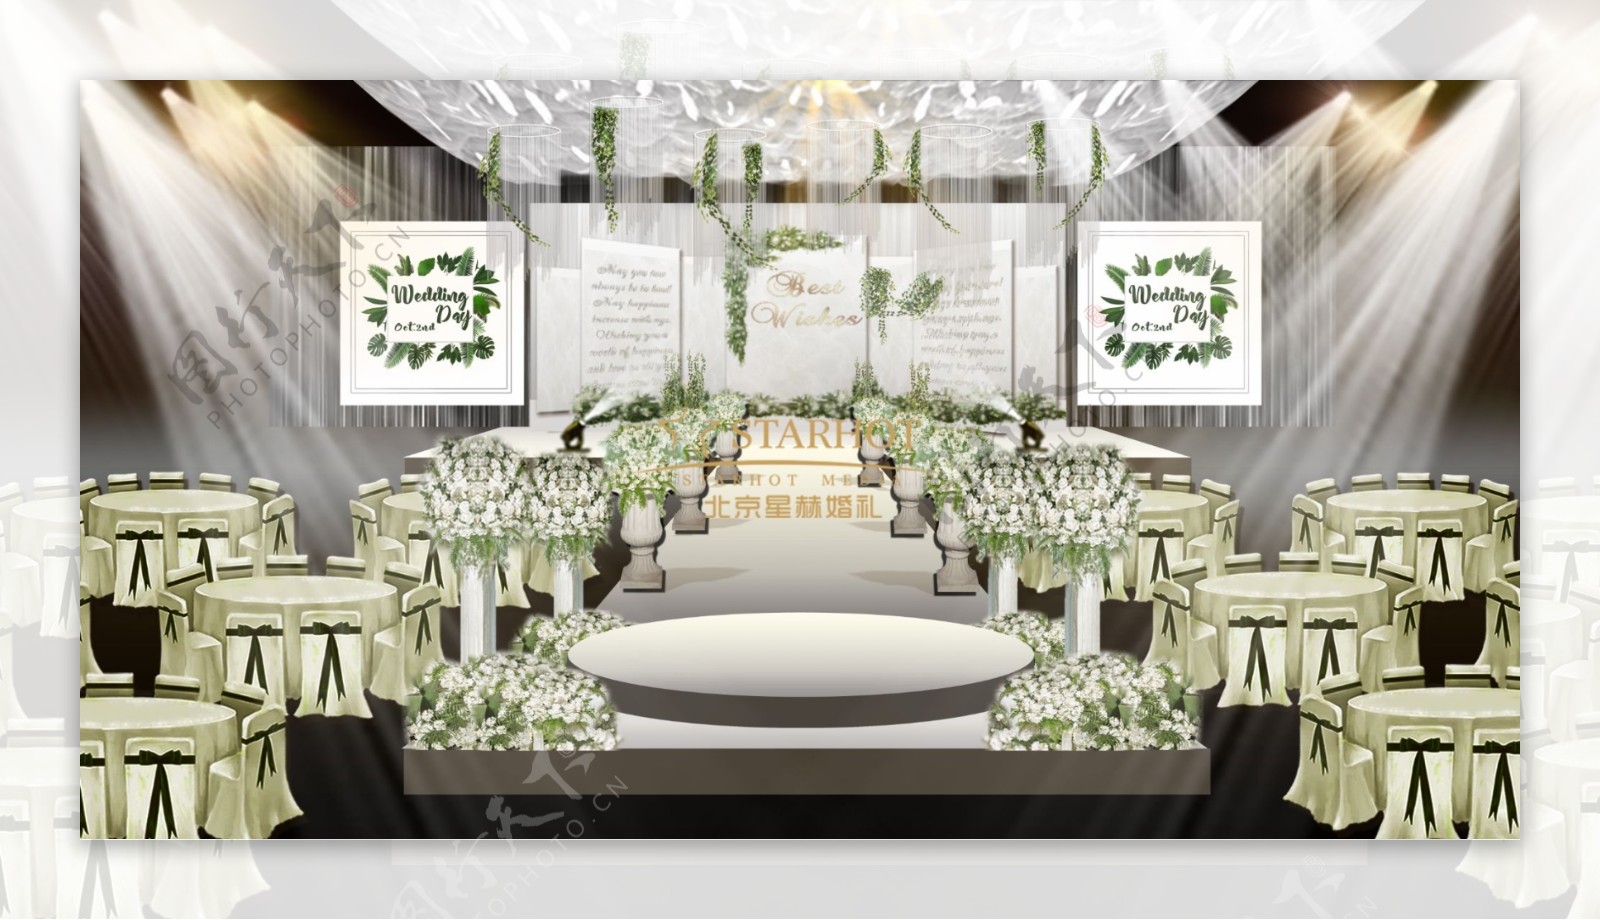 白绿婚礼效果图罗马柱路引线帘吊顶绿花藤